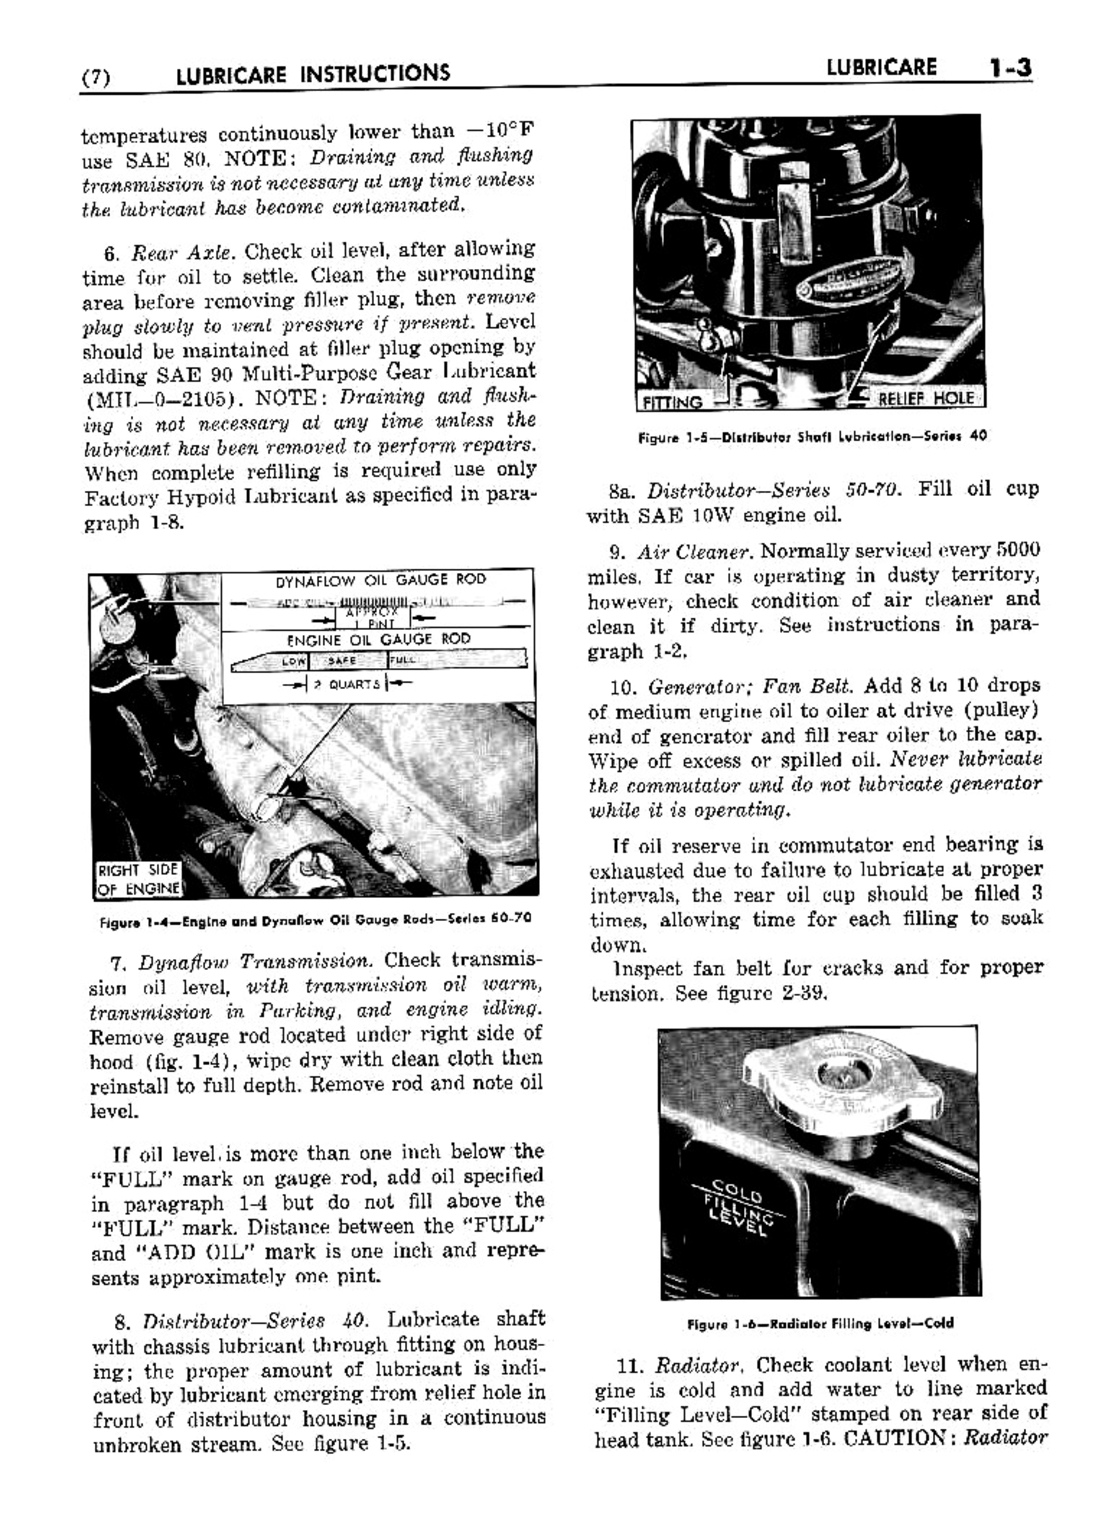 n_02 1953 Buick Shop Manual - Lubricare-003-003.jpg